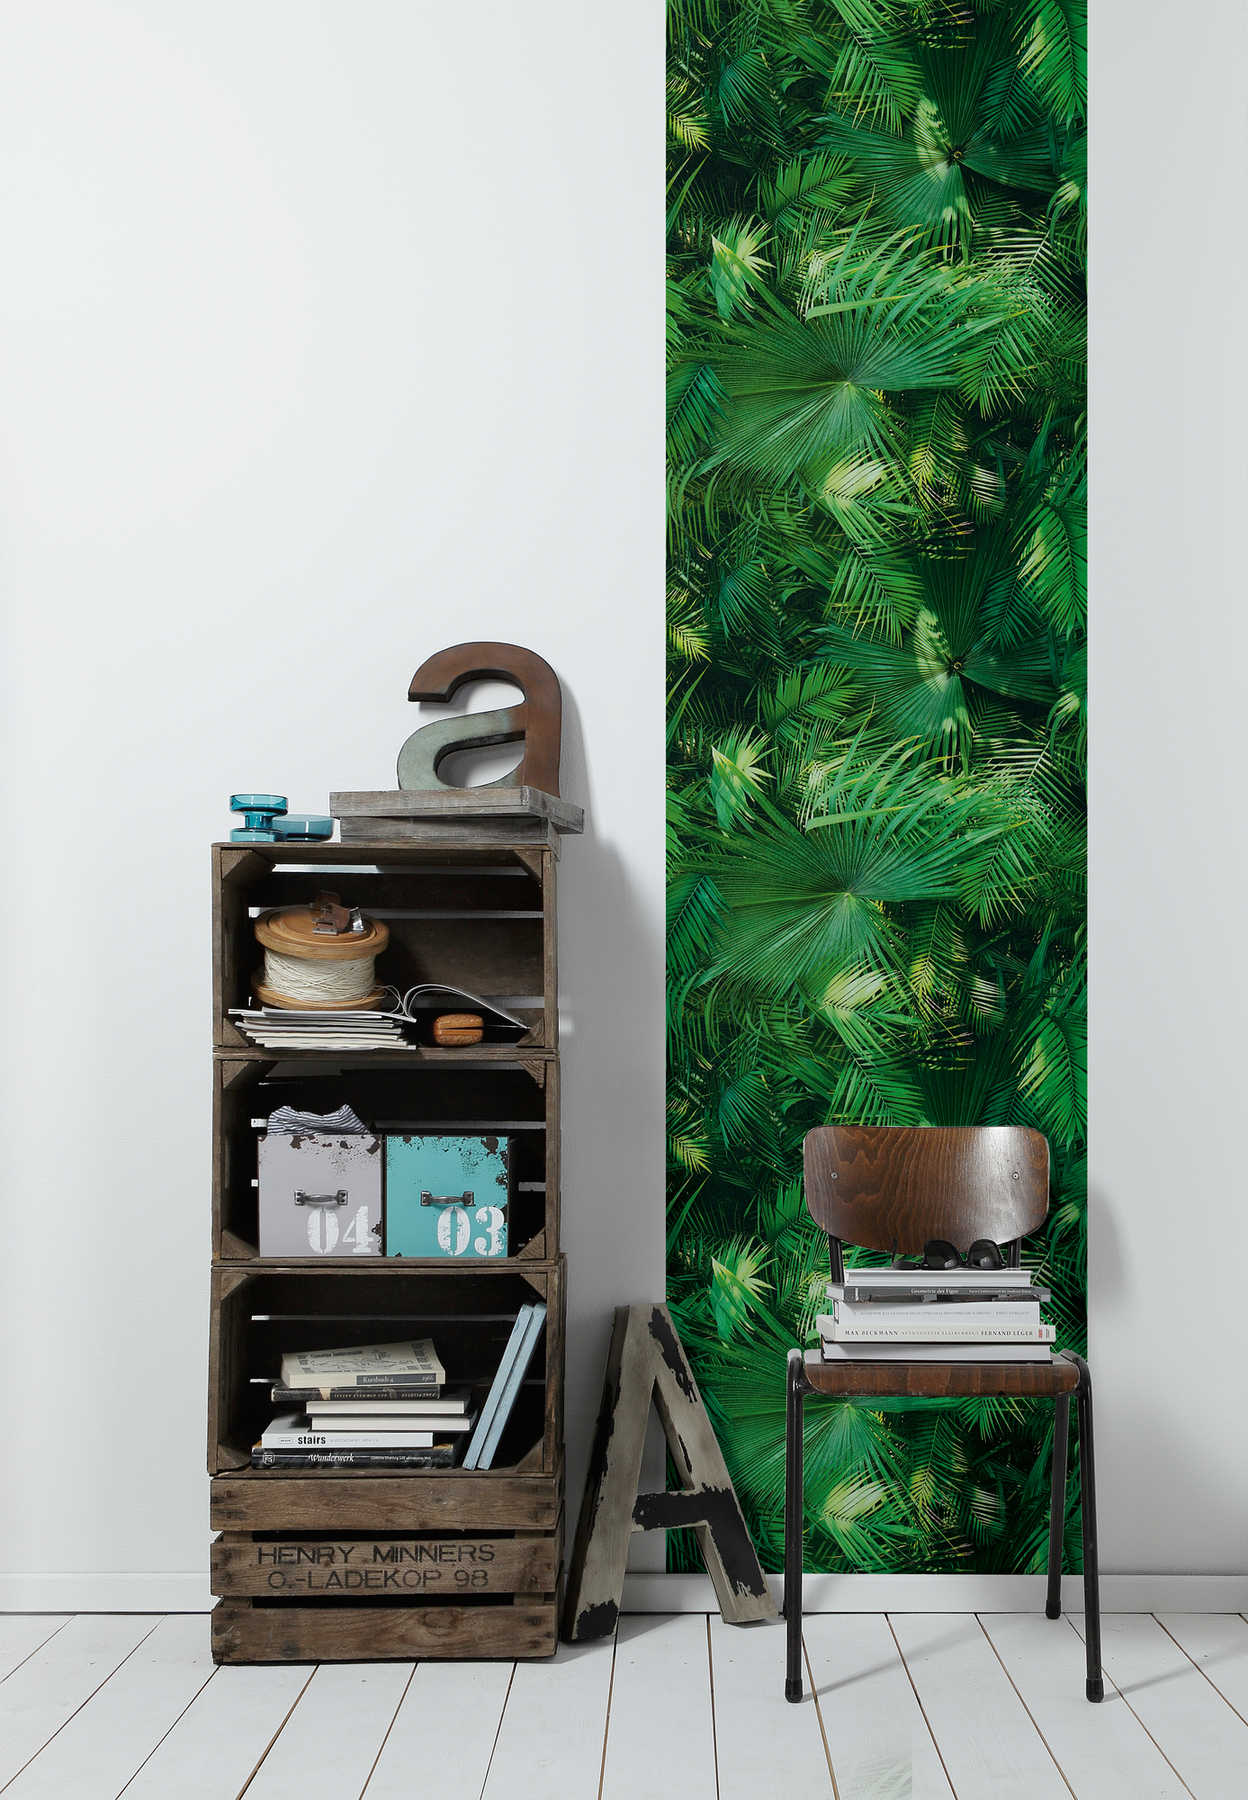             Papier peint jungle avec fougères tropicales - vert, noir
        